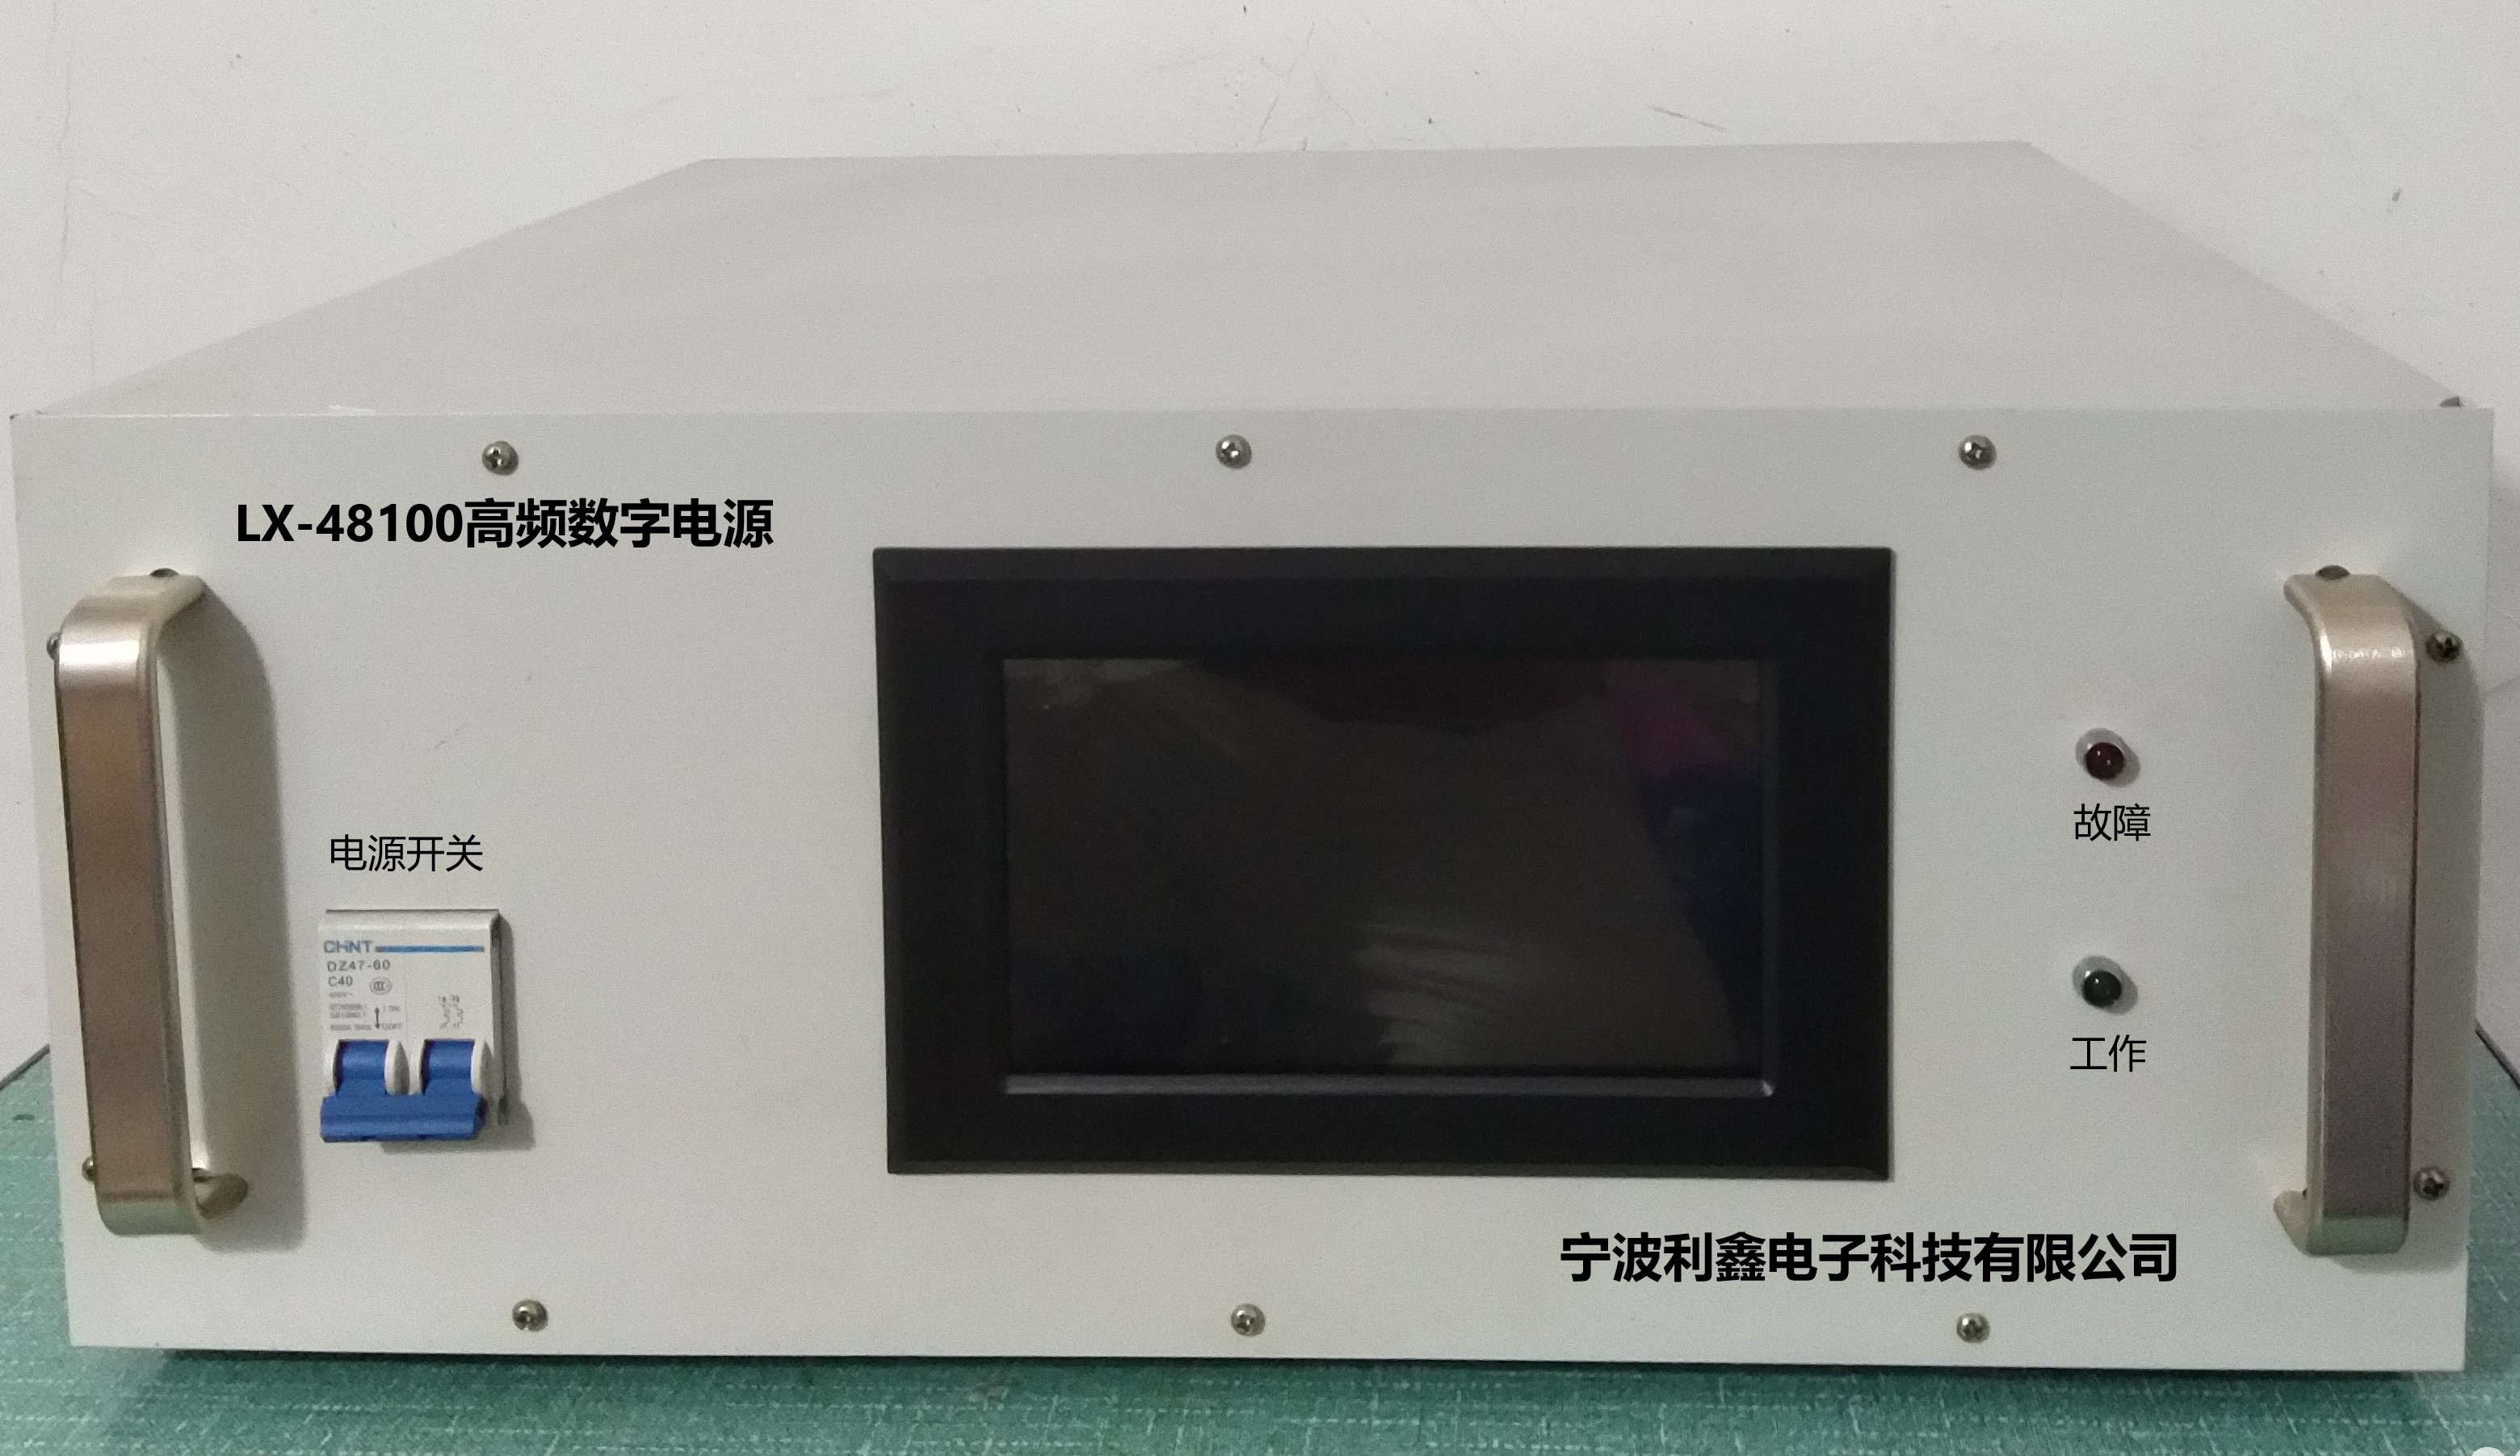 重庆智能LX-48100高频数字电源生产厂家_变频电源相关-宁波利鑫电子科技有限公司